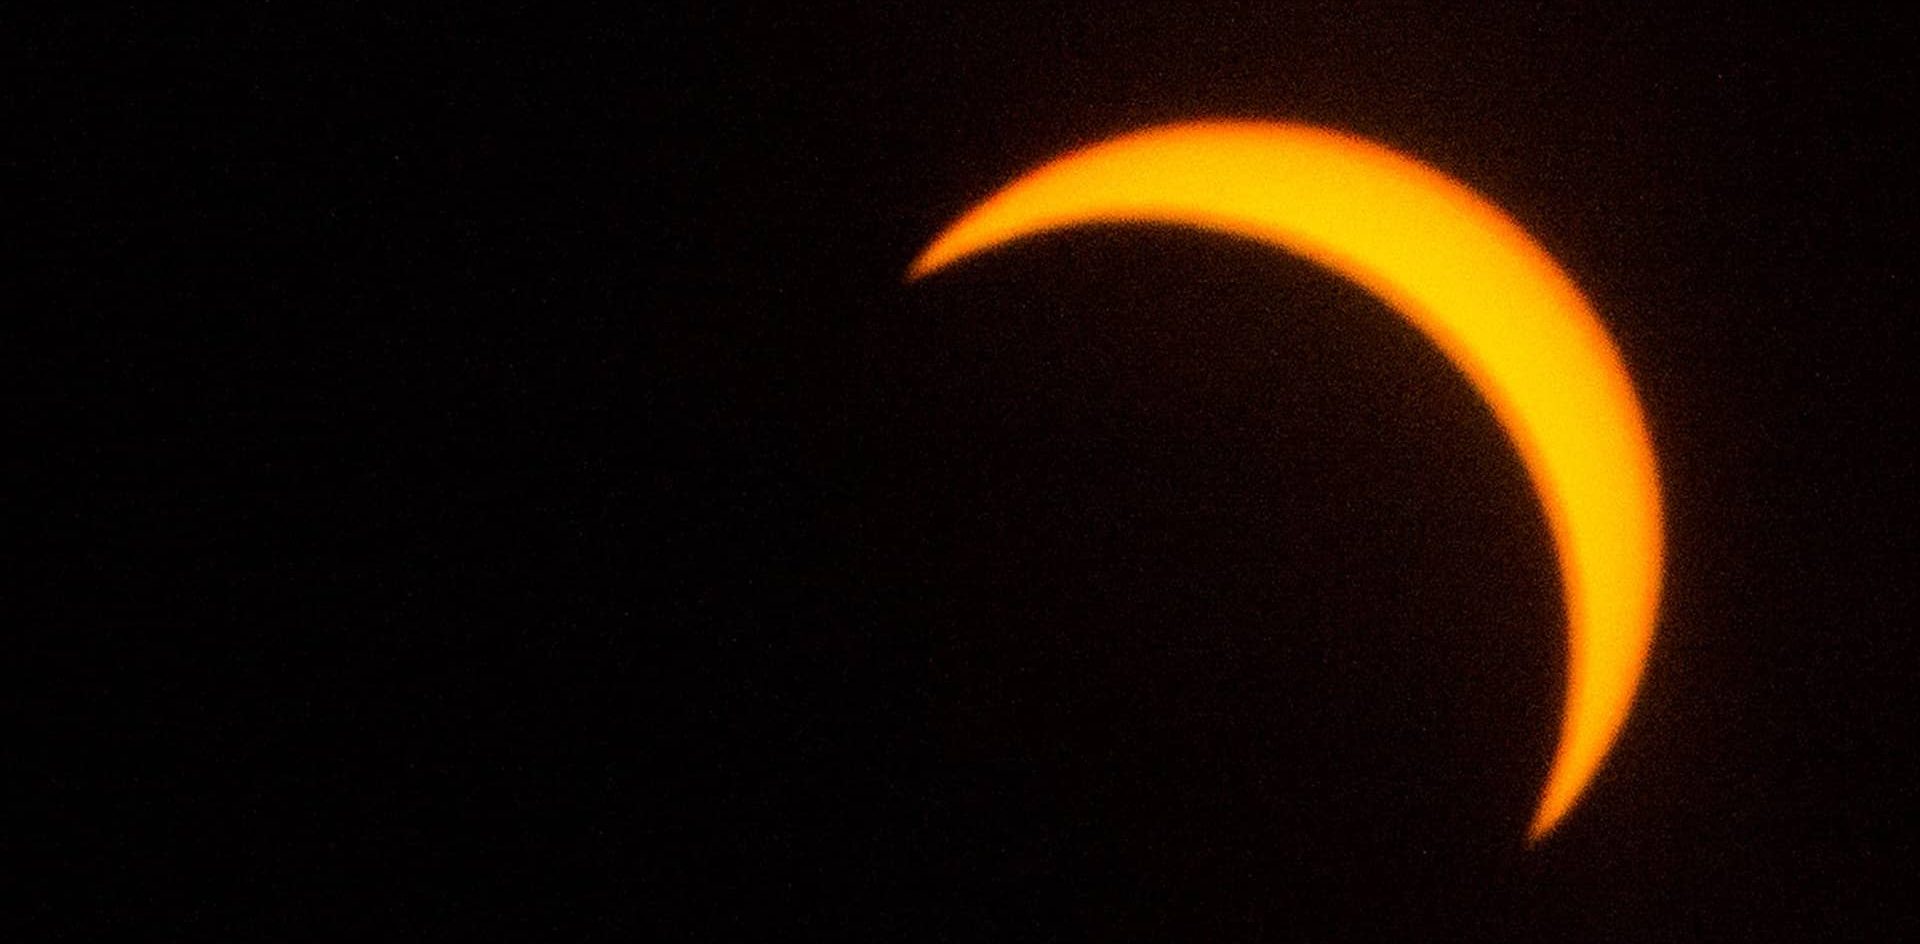 Cuáles son los riesgos de mirar directamente el eclipse